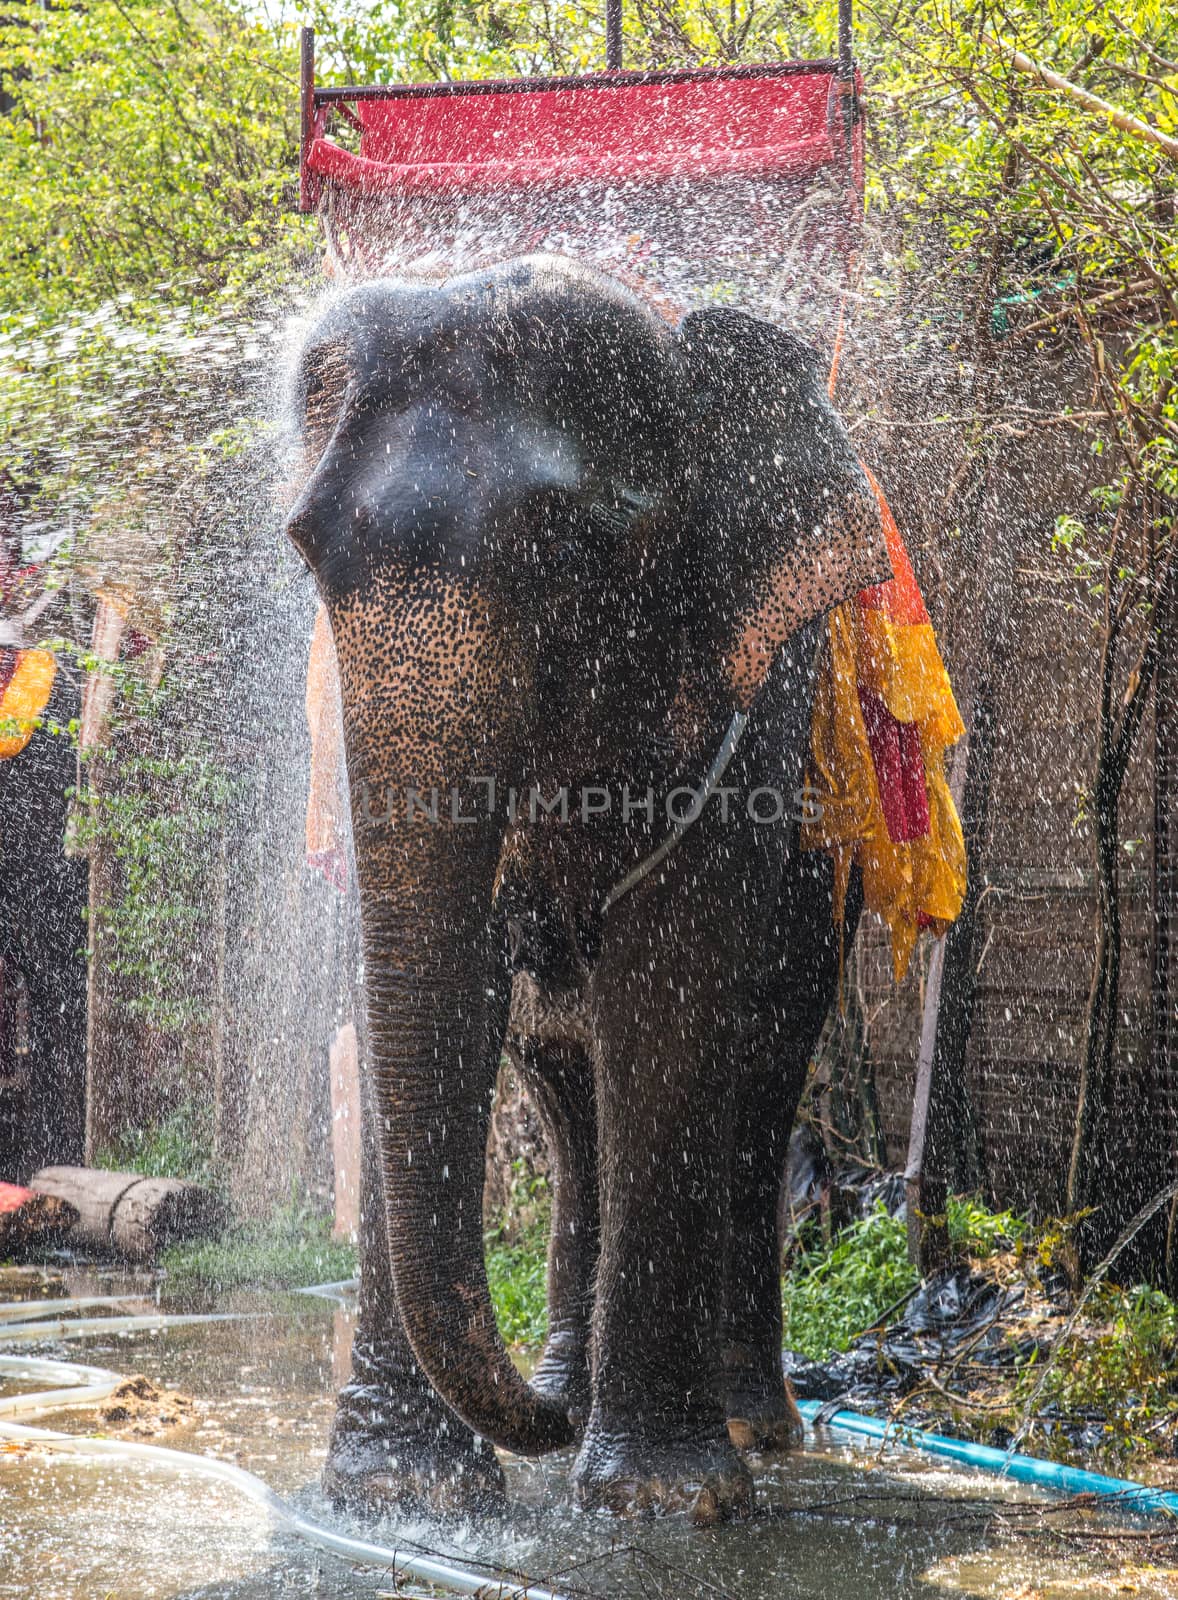 Elephant bathing in the farm.